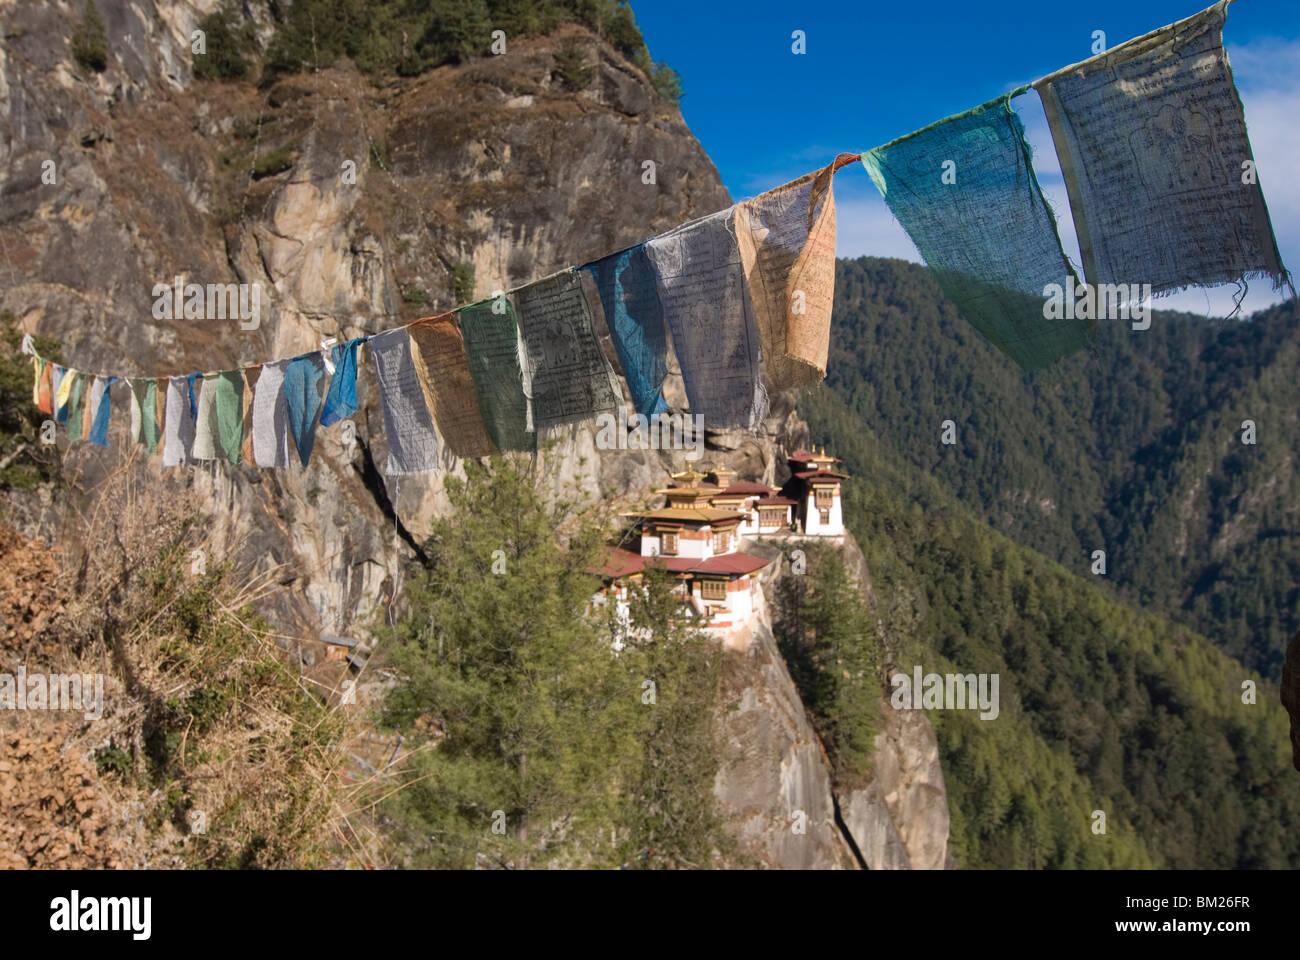 Tigers Nest Monastery (Taktshang Goempa), Bhutan Stock Photo